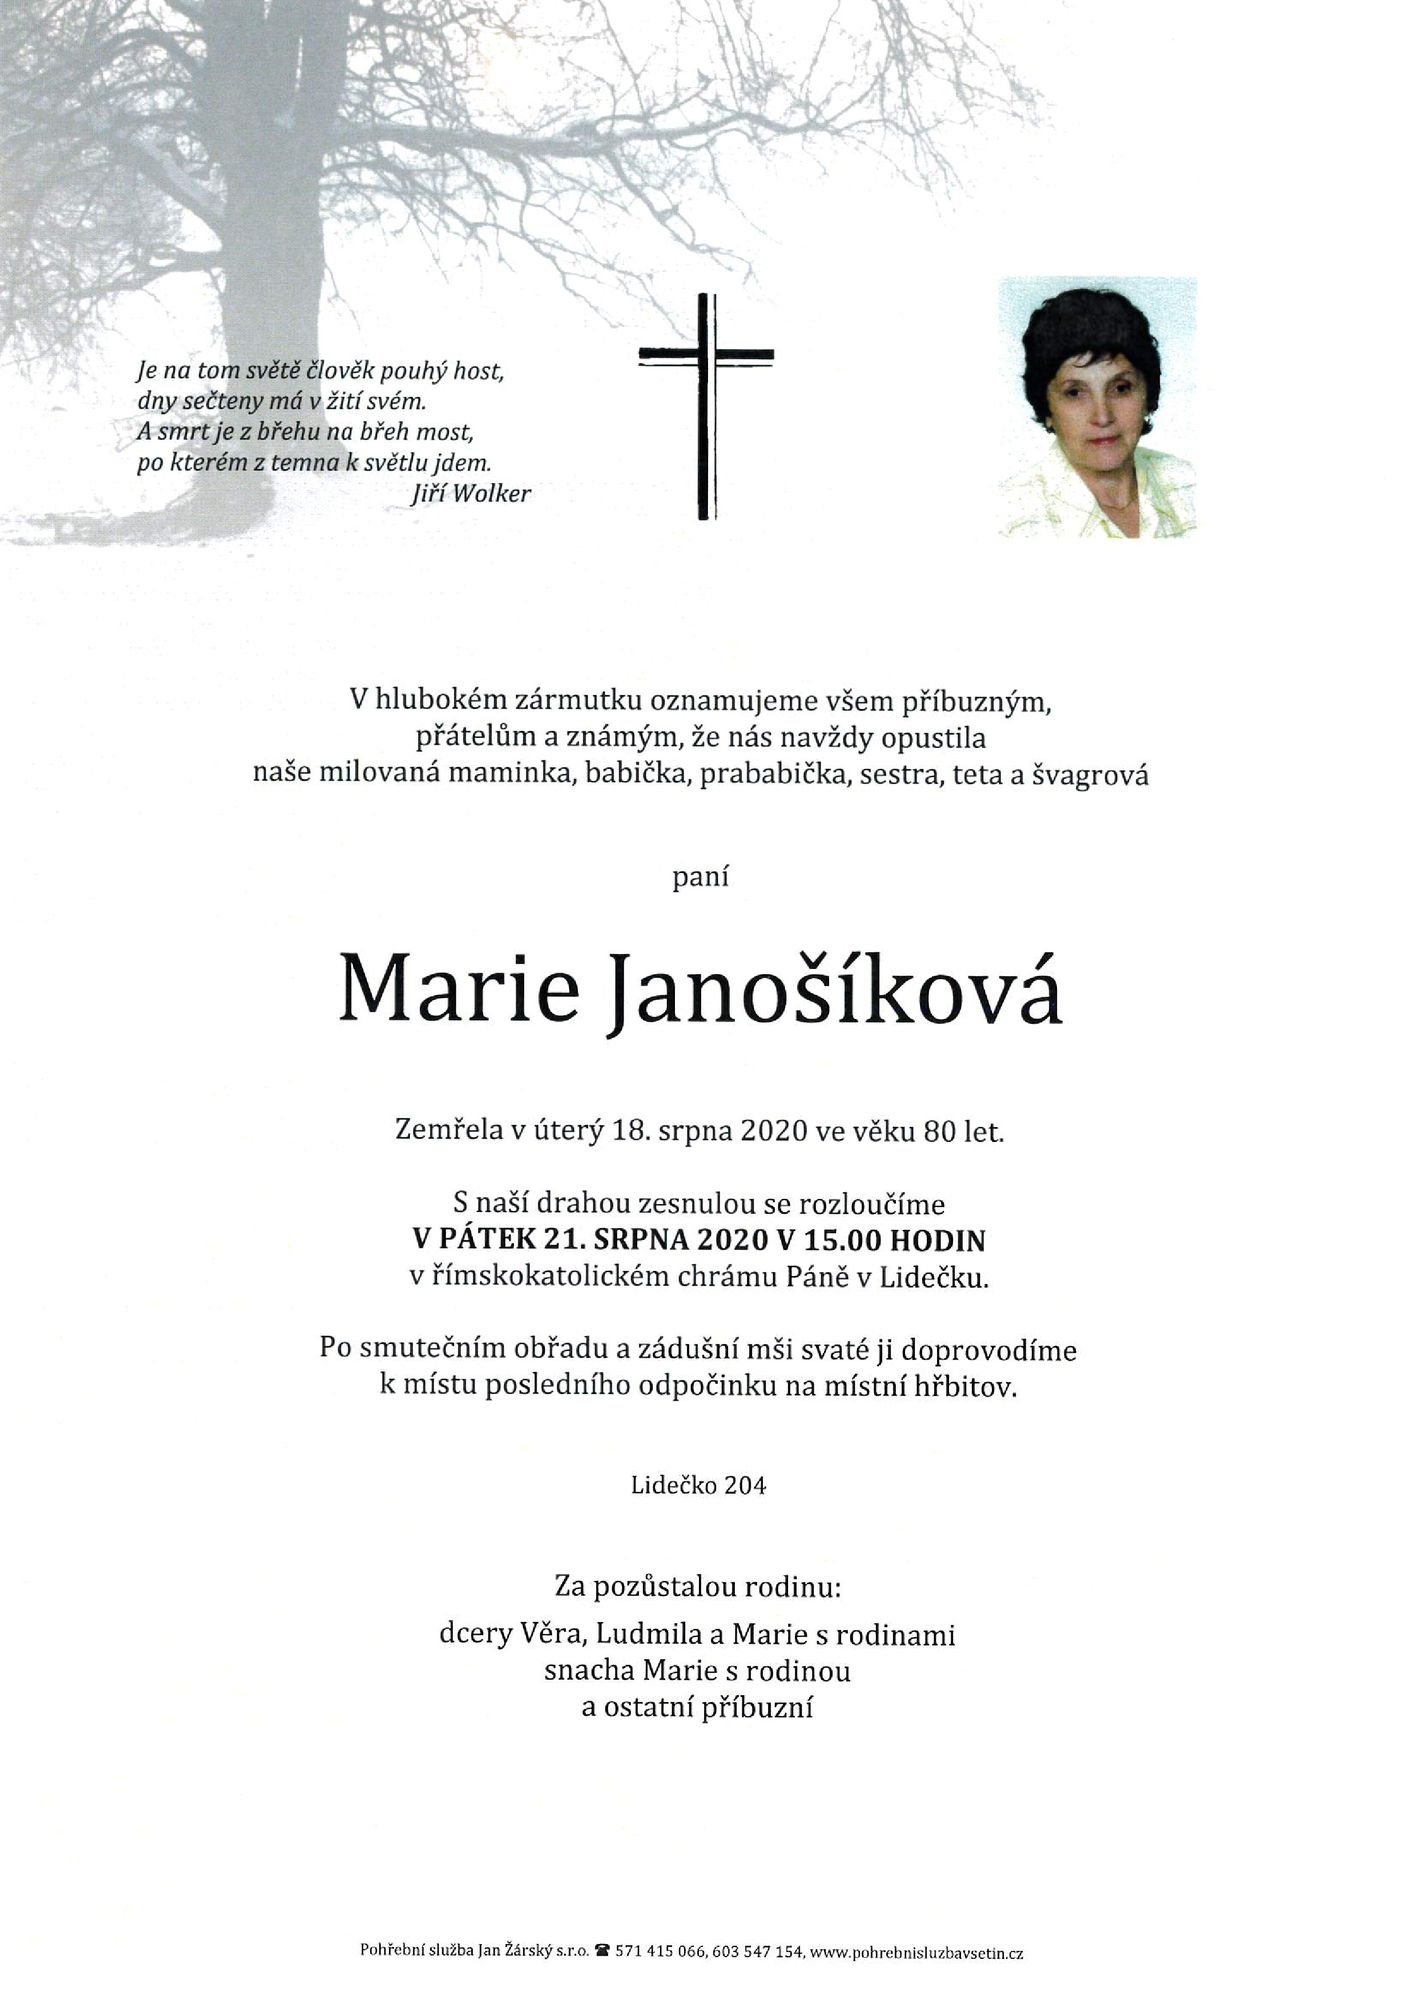 Marie Janošíková